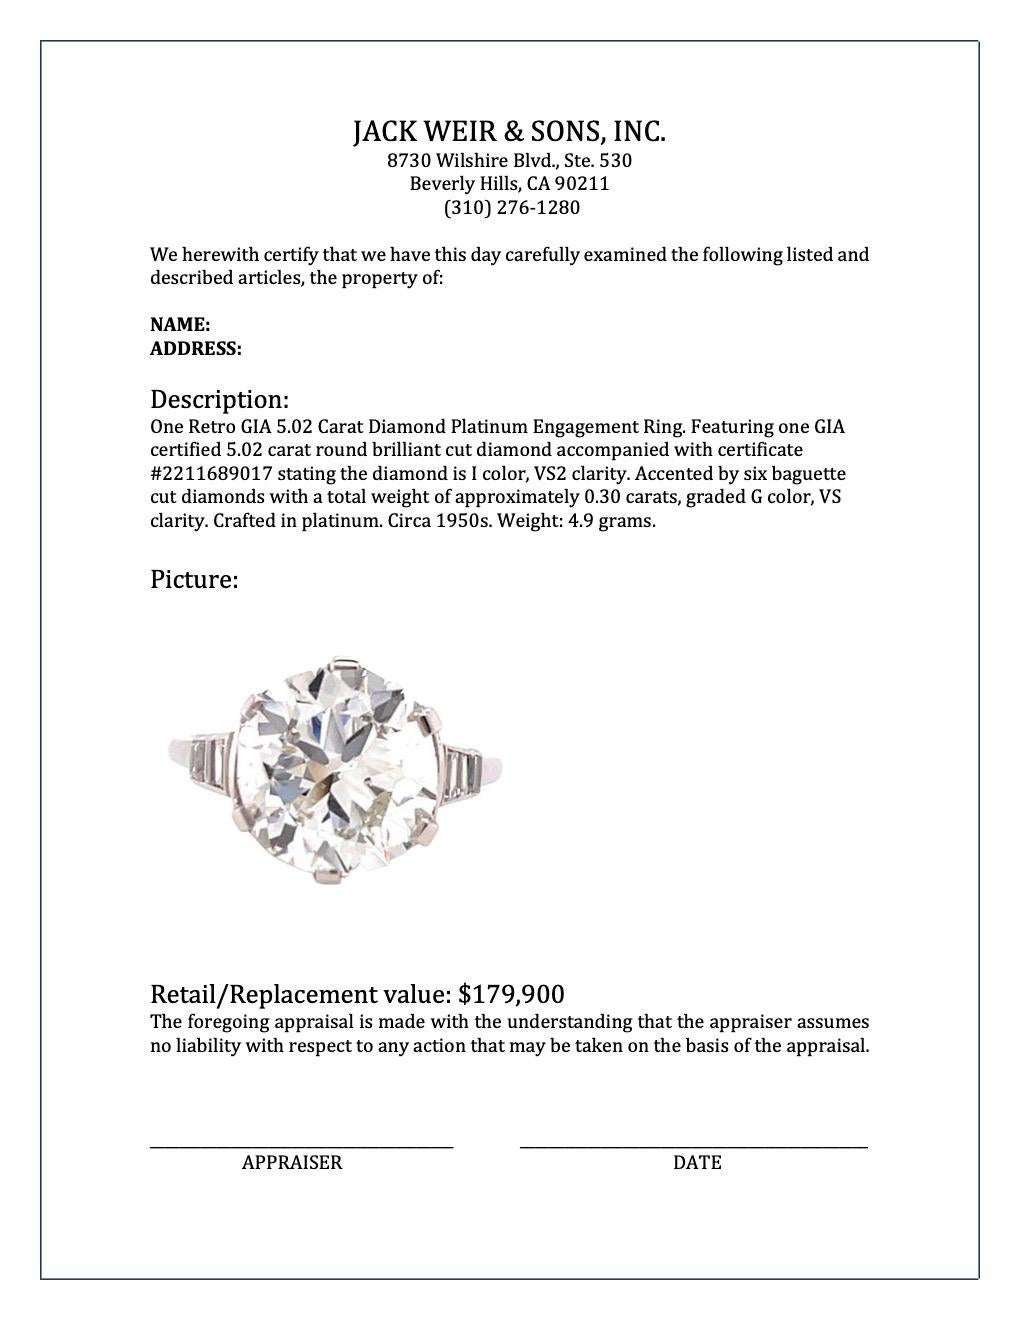 Retro GIA 5.02 Carat Diamond Platinum Engagement Ring 3